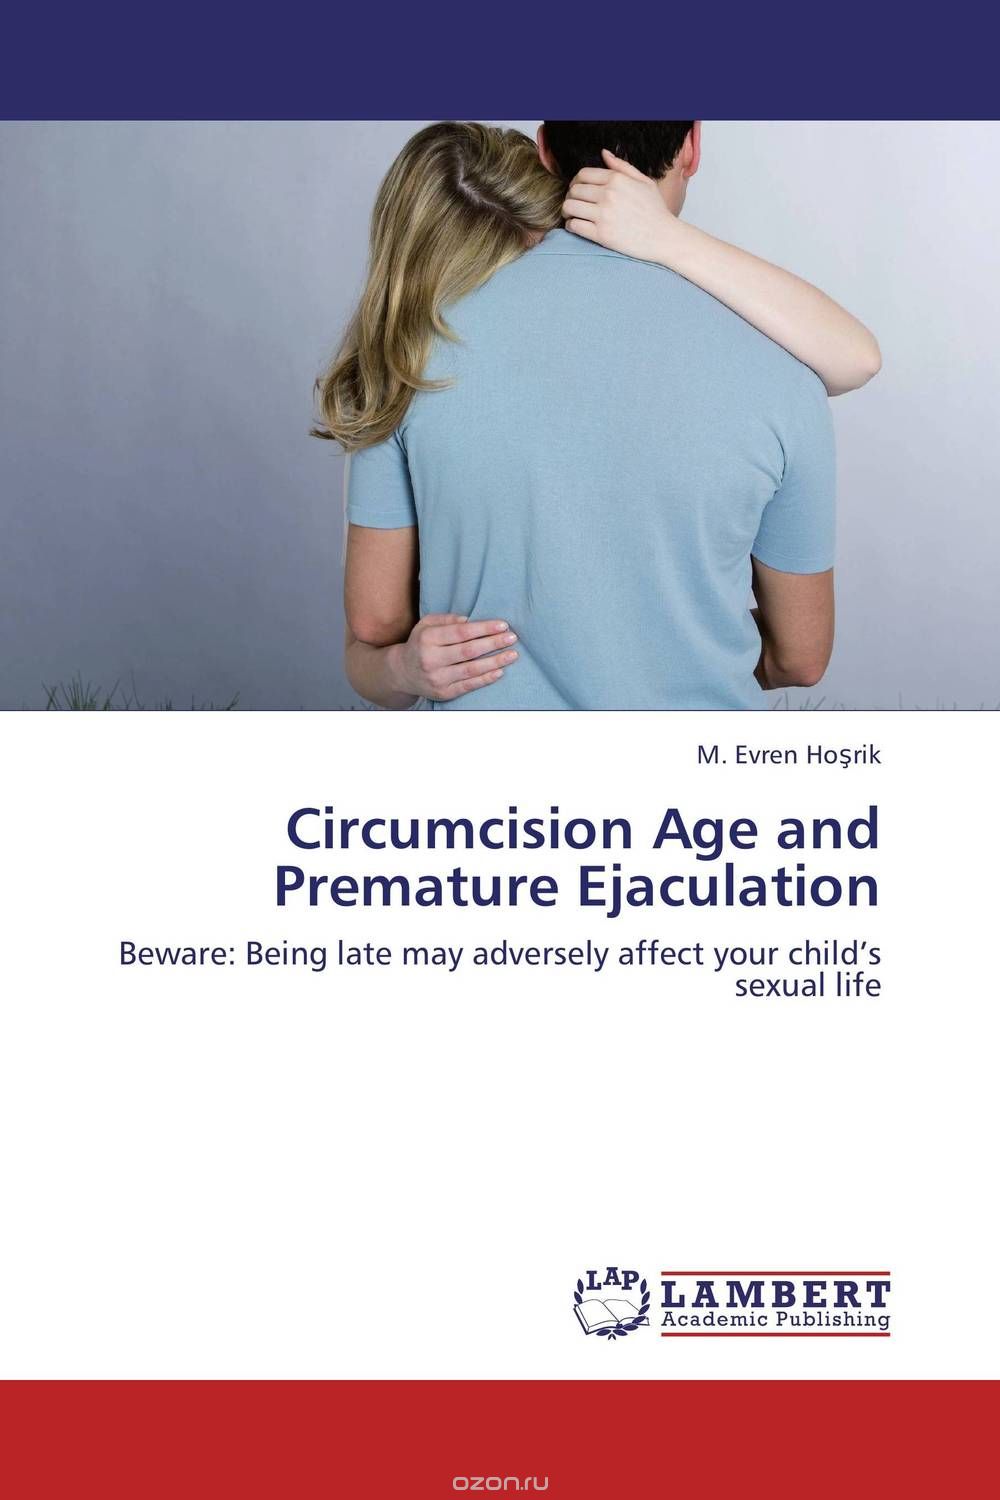 Скачать книгу "Circumcision Age and Premature Ejaculation"